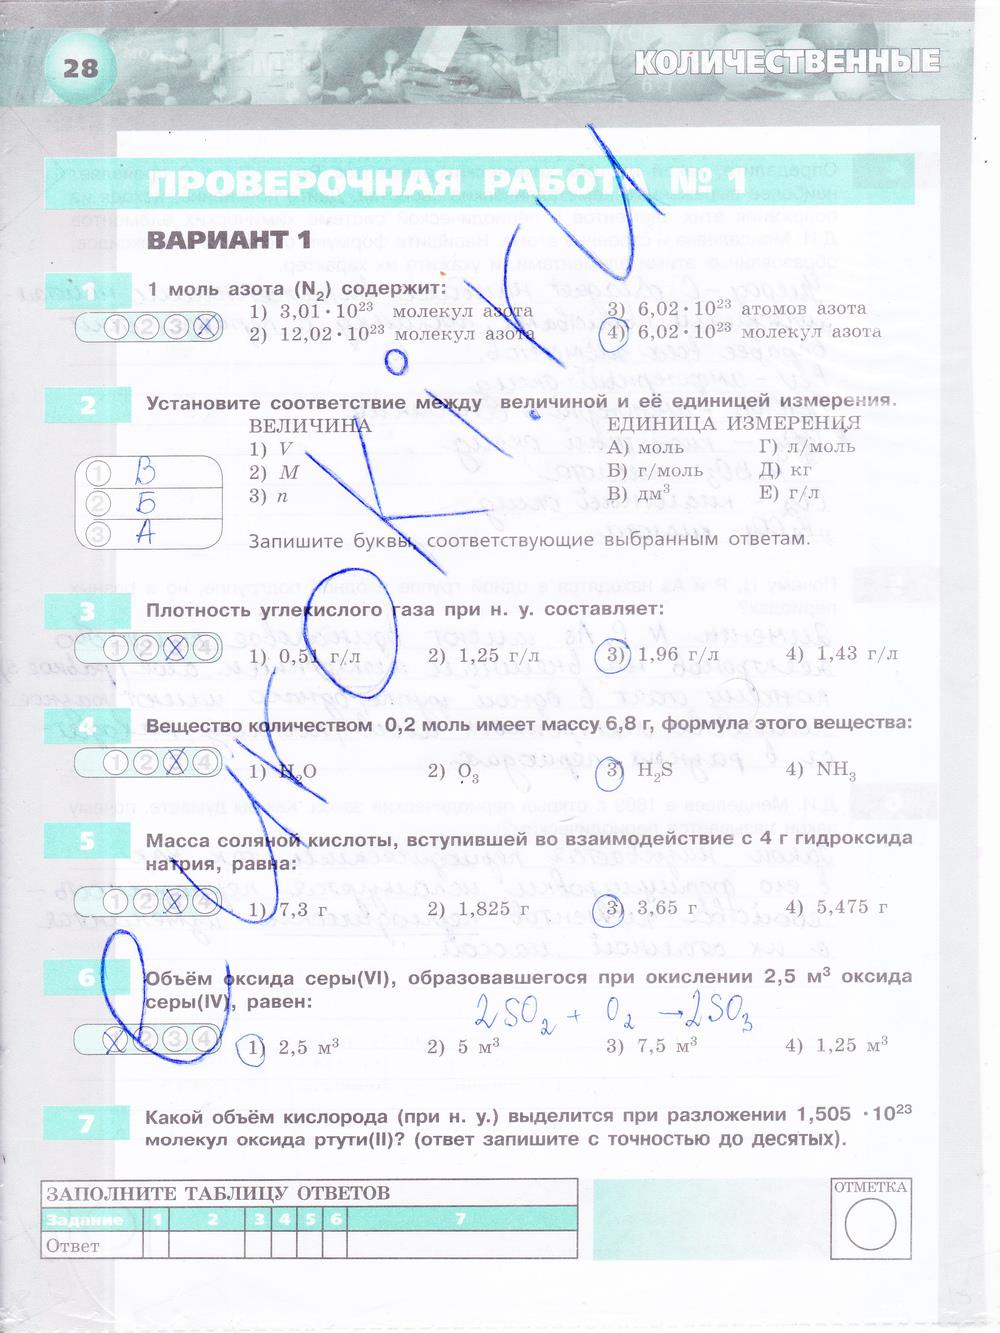 гдз 8 класс тетрадь-экзаменатор страница 28 химия Бобылева, Бирюлина